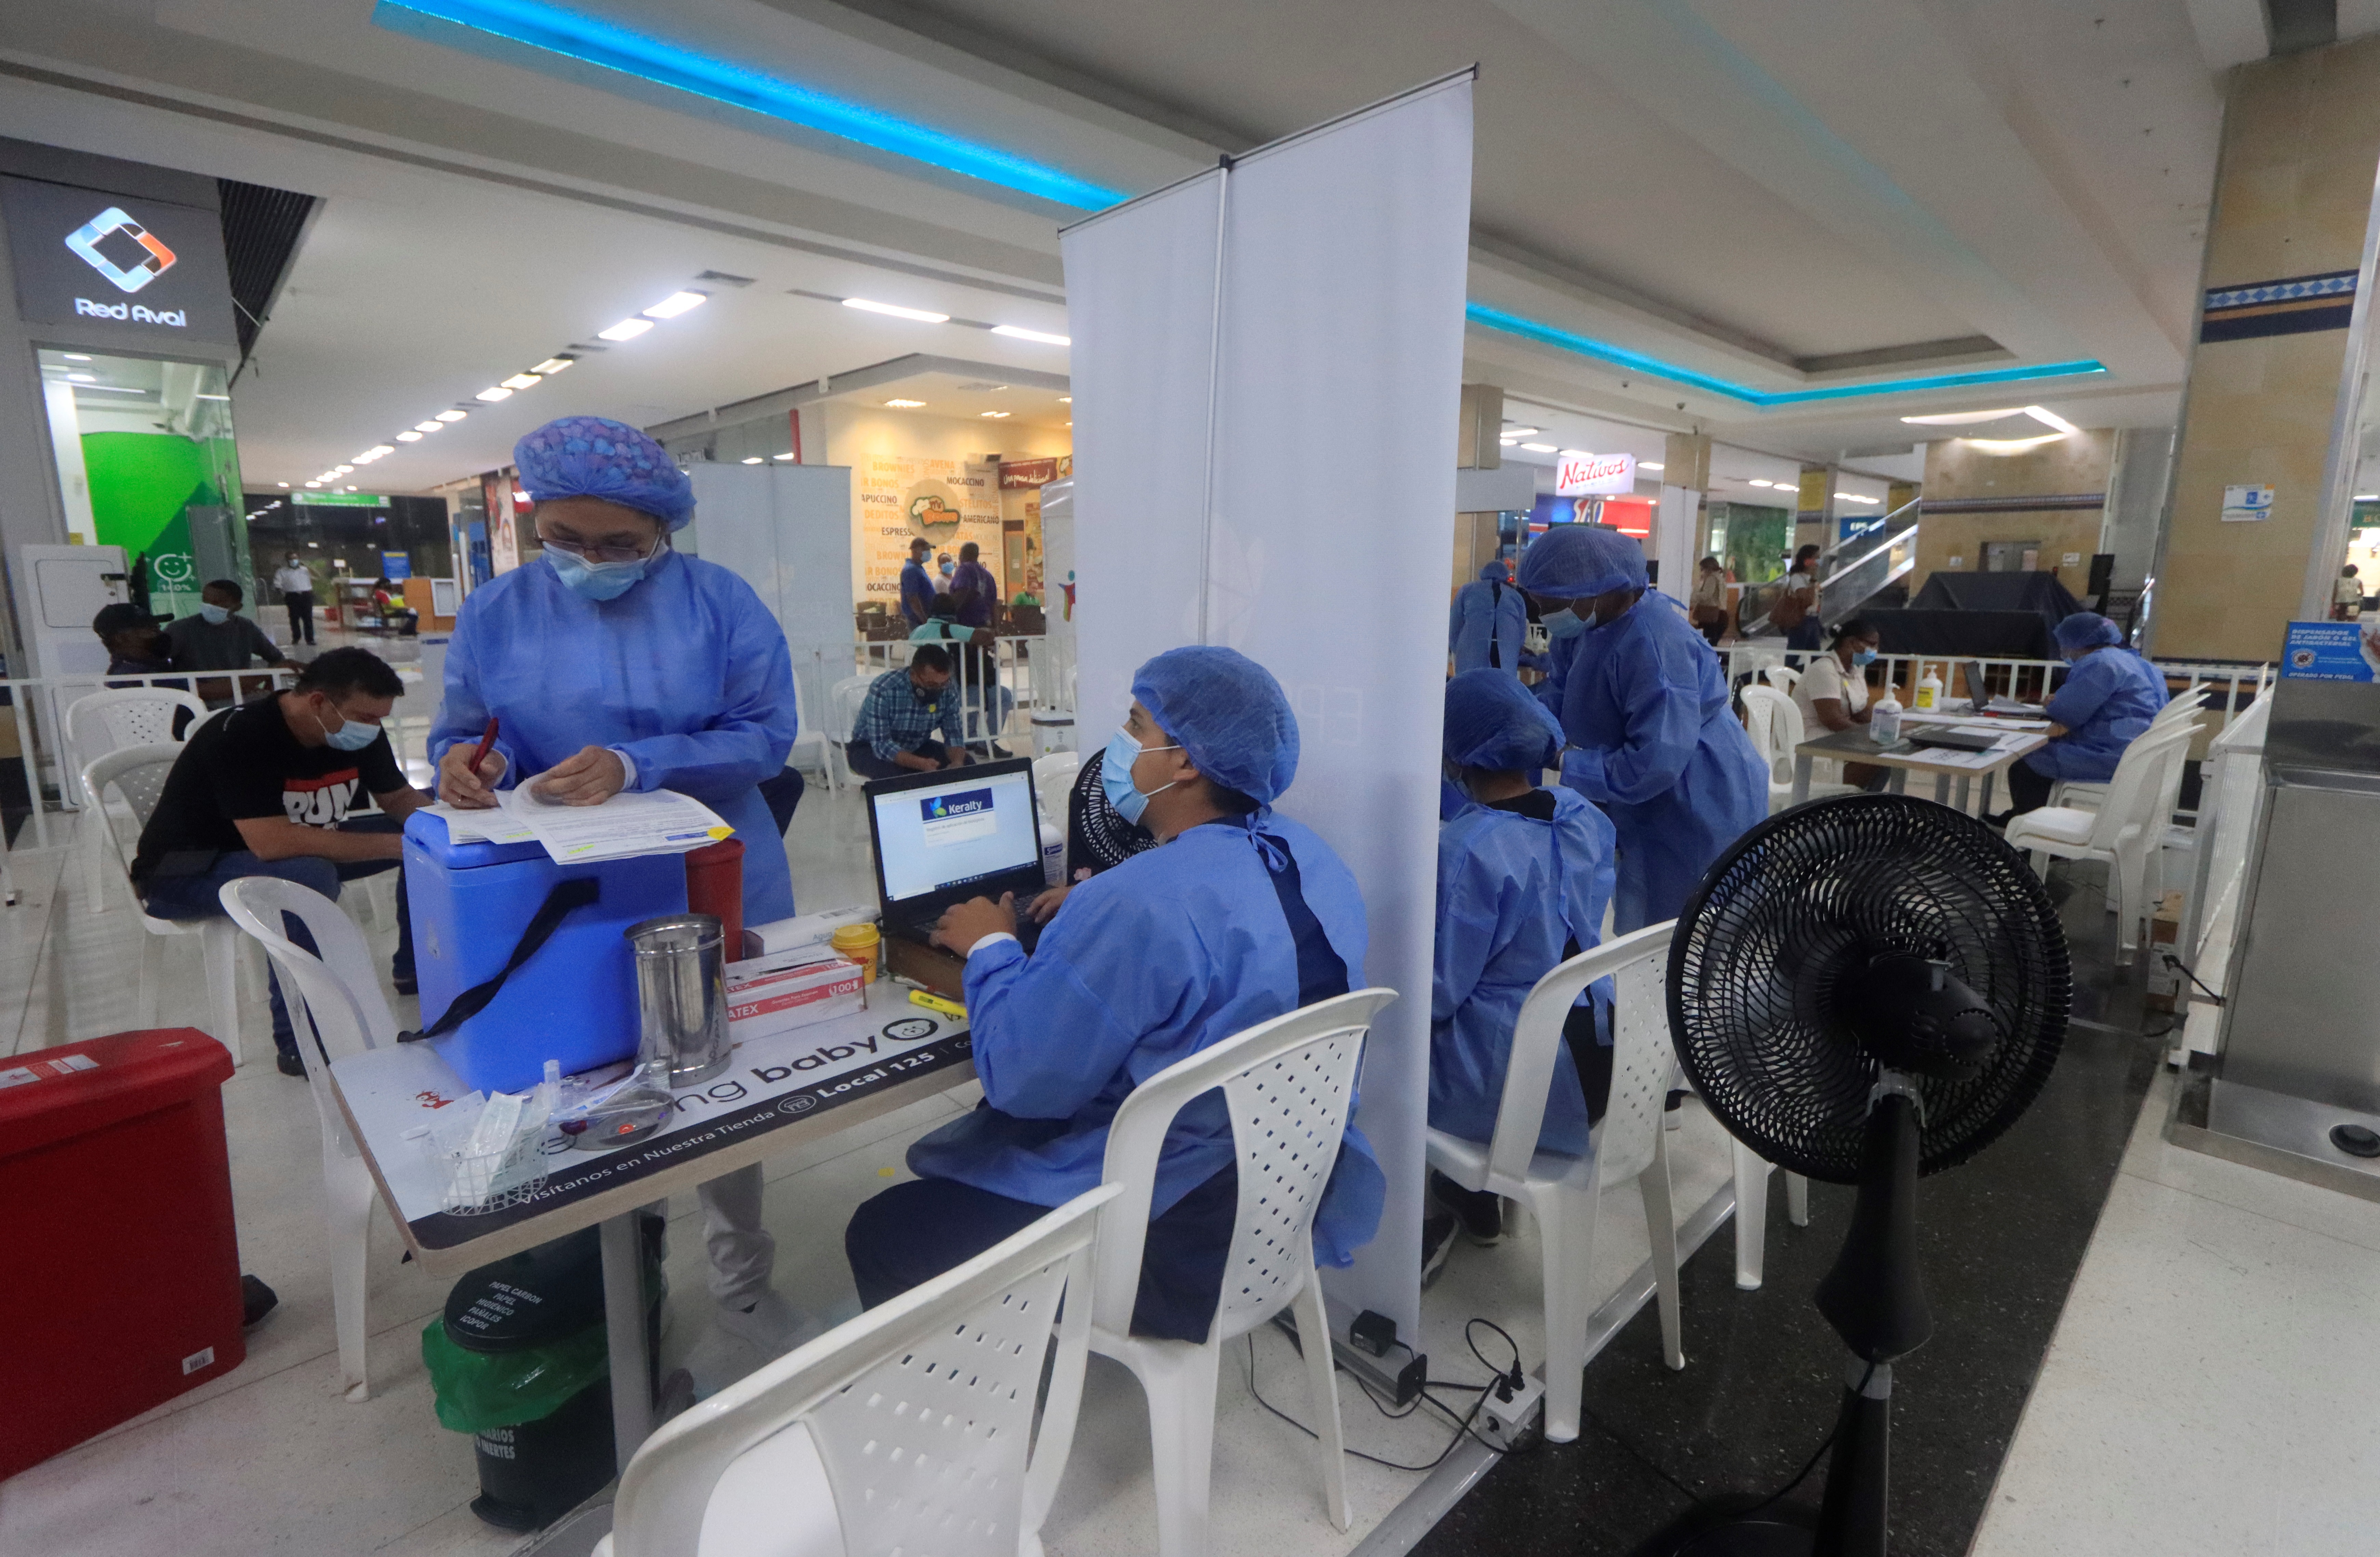 Enfermeras son vistas en una jornada de vacunación masiva en centros comerciales contra la COVID-19, con la que las autoridades de salud buscan combatir el avance de la enfermedad en Cartagena (Colombia). EFE/ Ricardo Maldonado Rozo/Archivo
